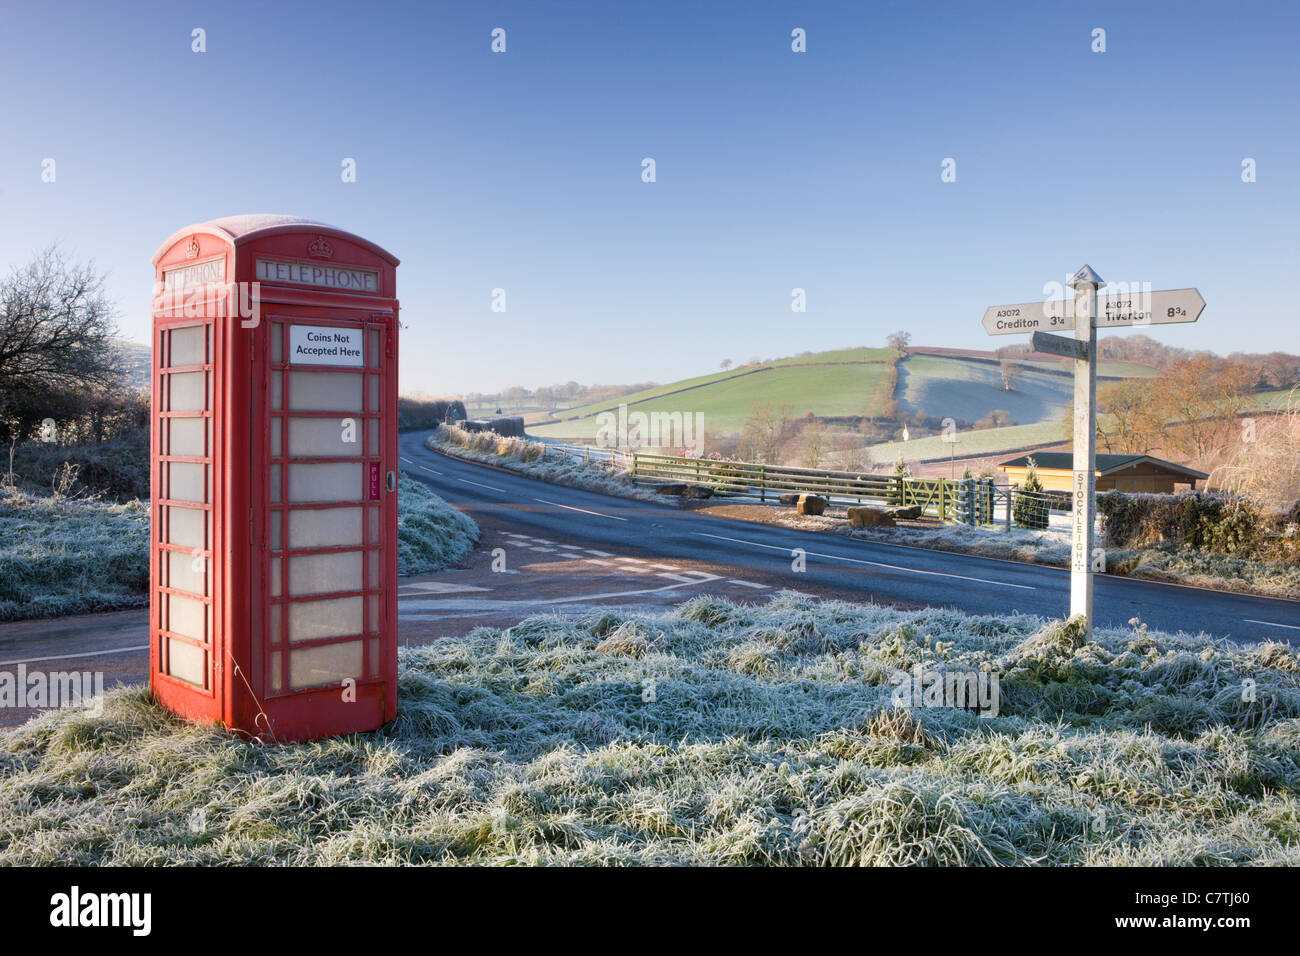 Inglese tradizionale telefono nella casella di brina in corrispondenza Stockleigh Pomeroy, Devon, Inghilterra. Dicembre 2008 Foto Stock